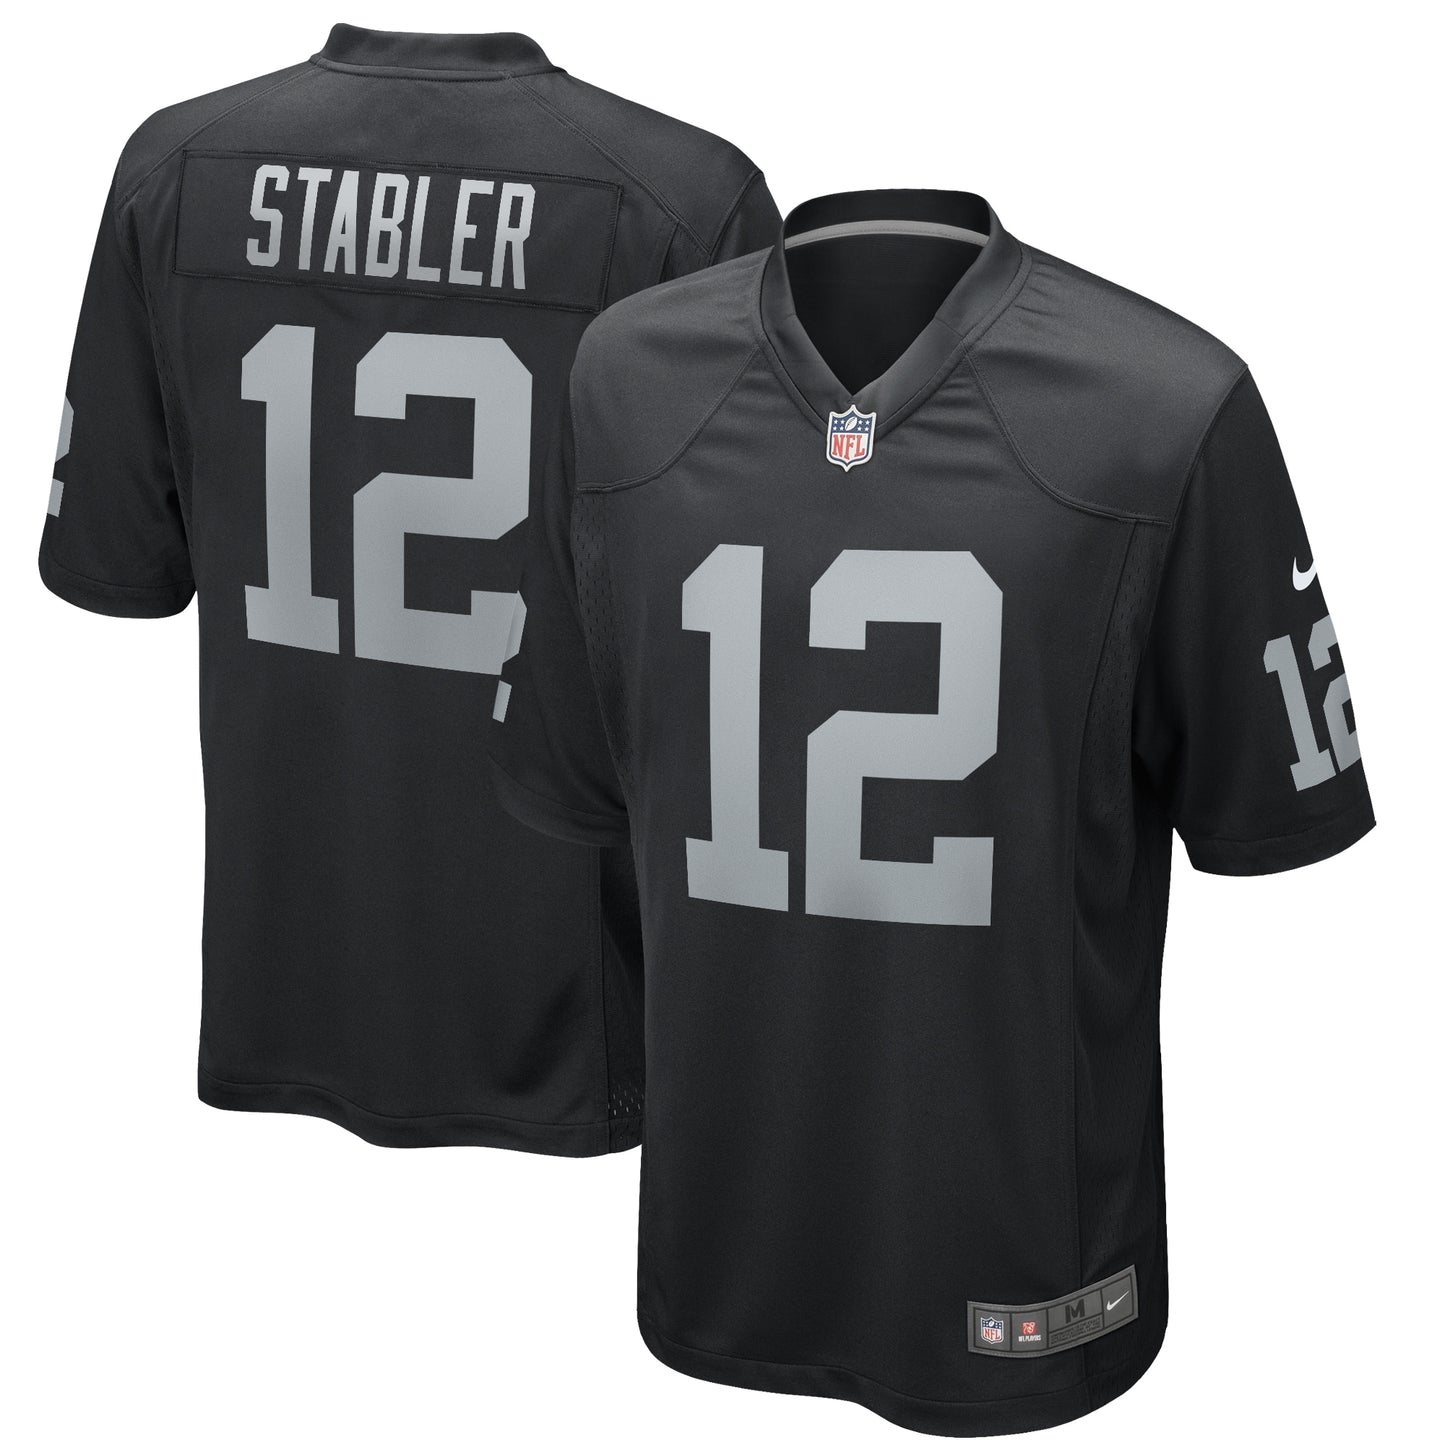 Ken Stabler Las Vegas Raiders Nike Game Retired Player Jersey - Black